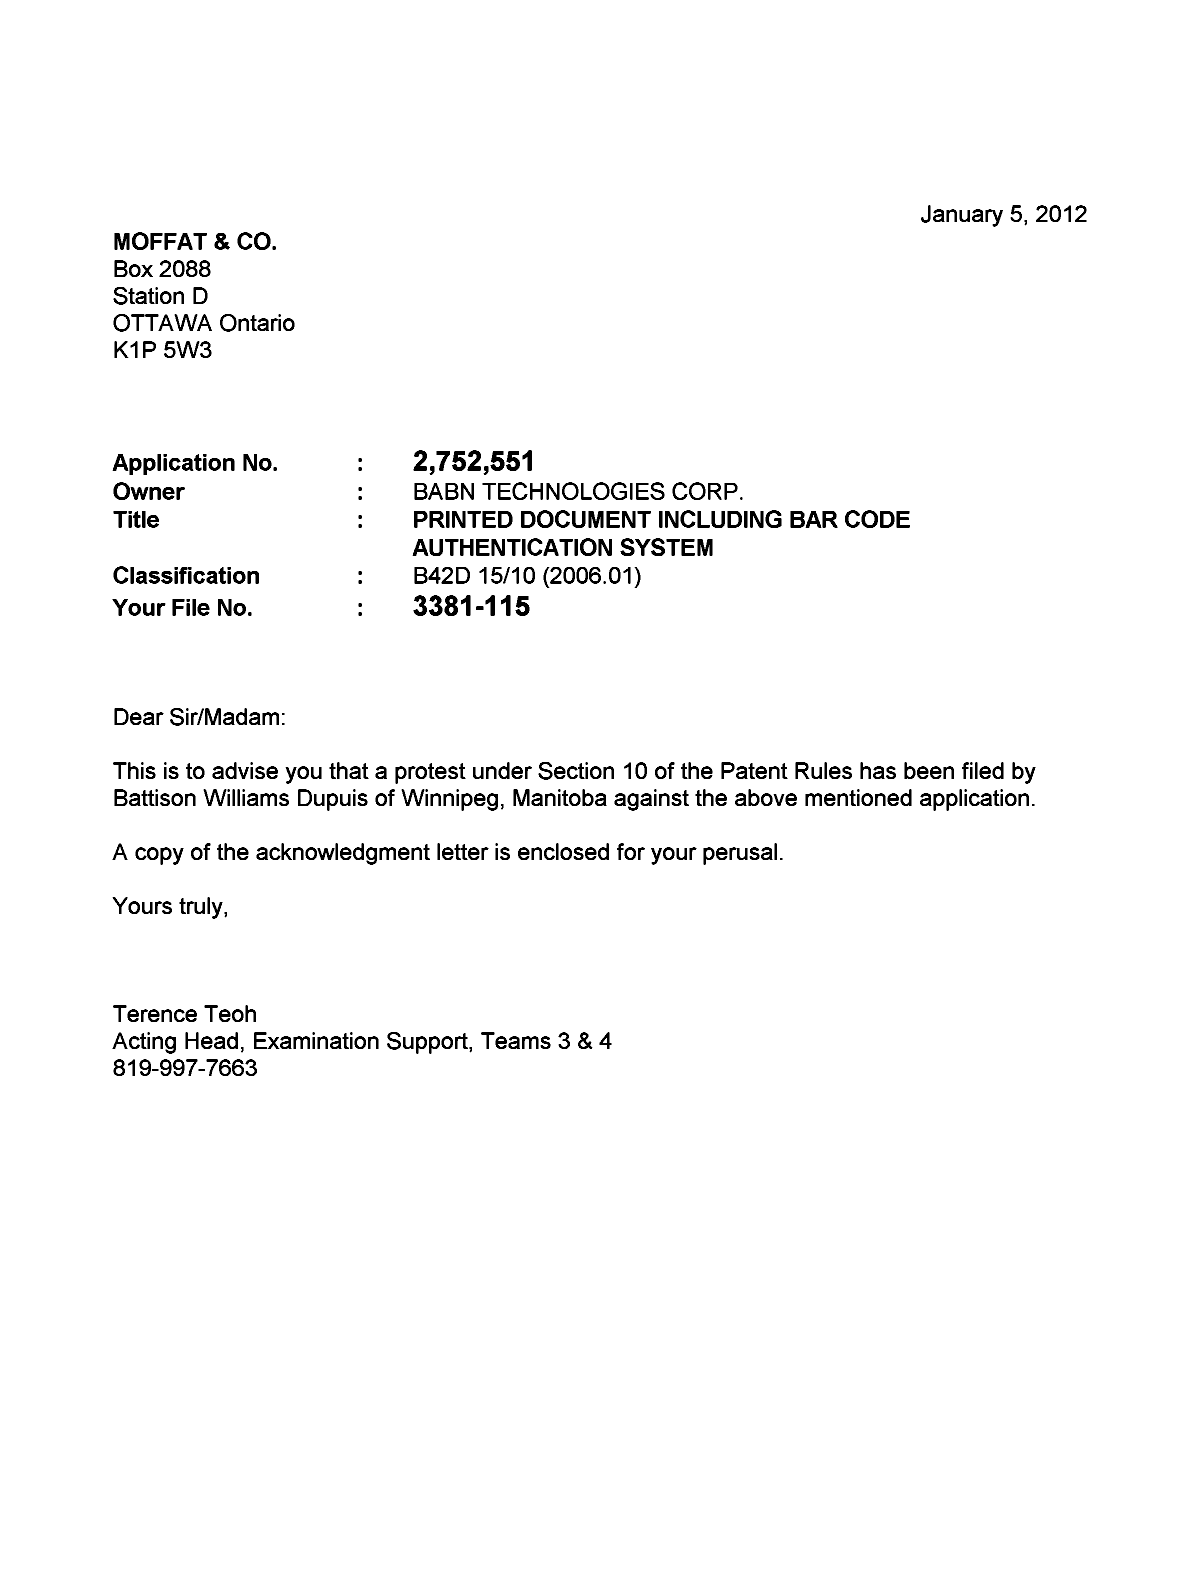 Document de brevet canadien 2752551. Poursuite-Amendment 20111205. Image 1 de 2